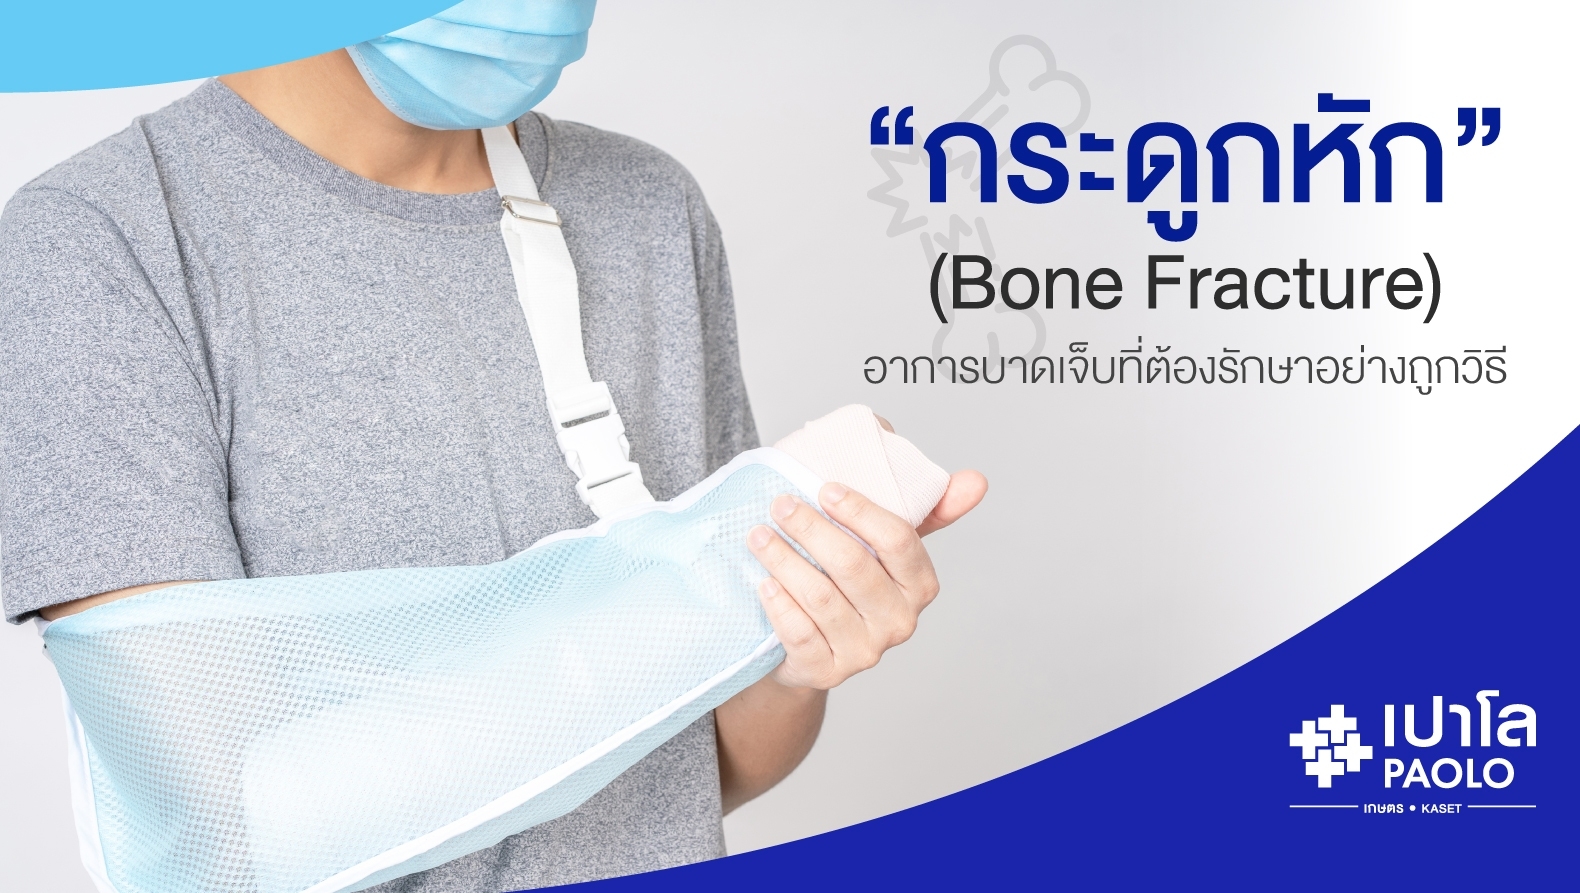 กระดูกหัก (Bone Fracture) อาการบาดเจ็บที่ต้องรักษาอย่างถูกวิธี 